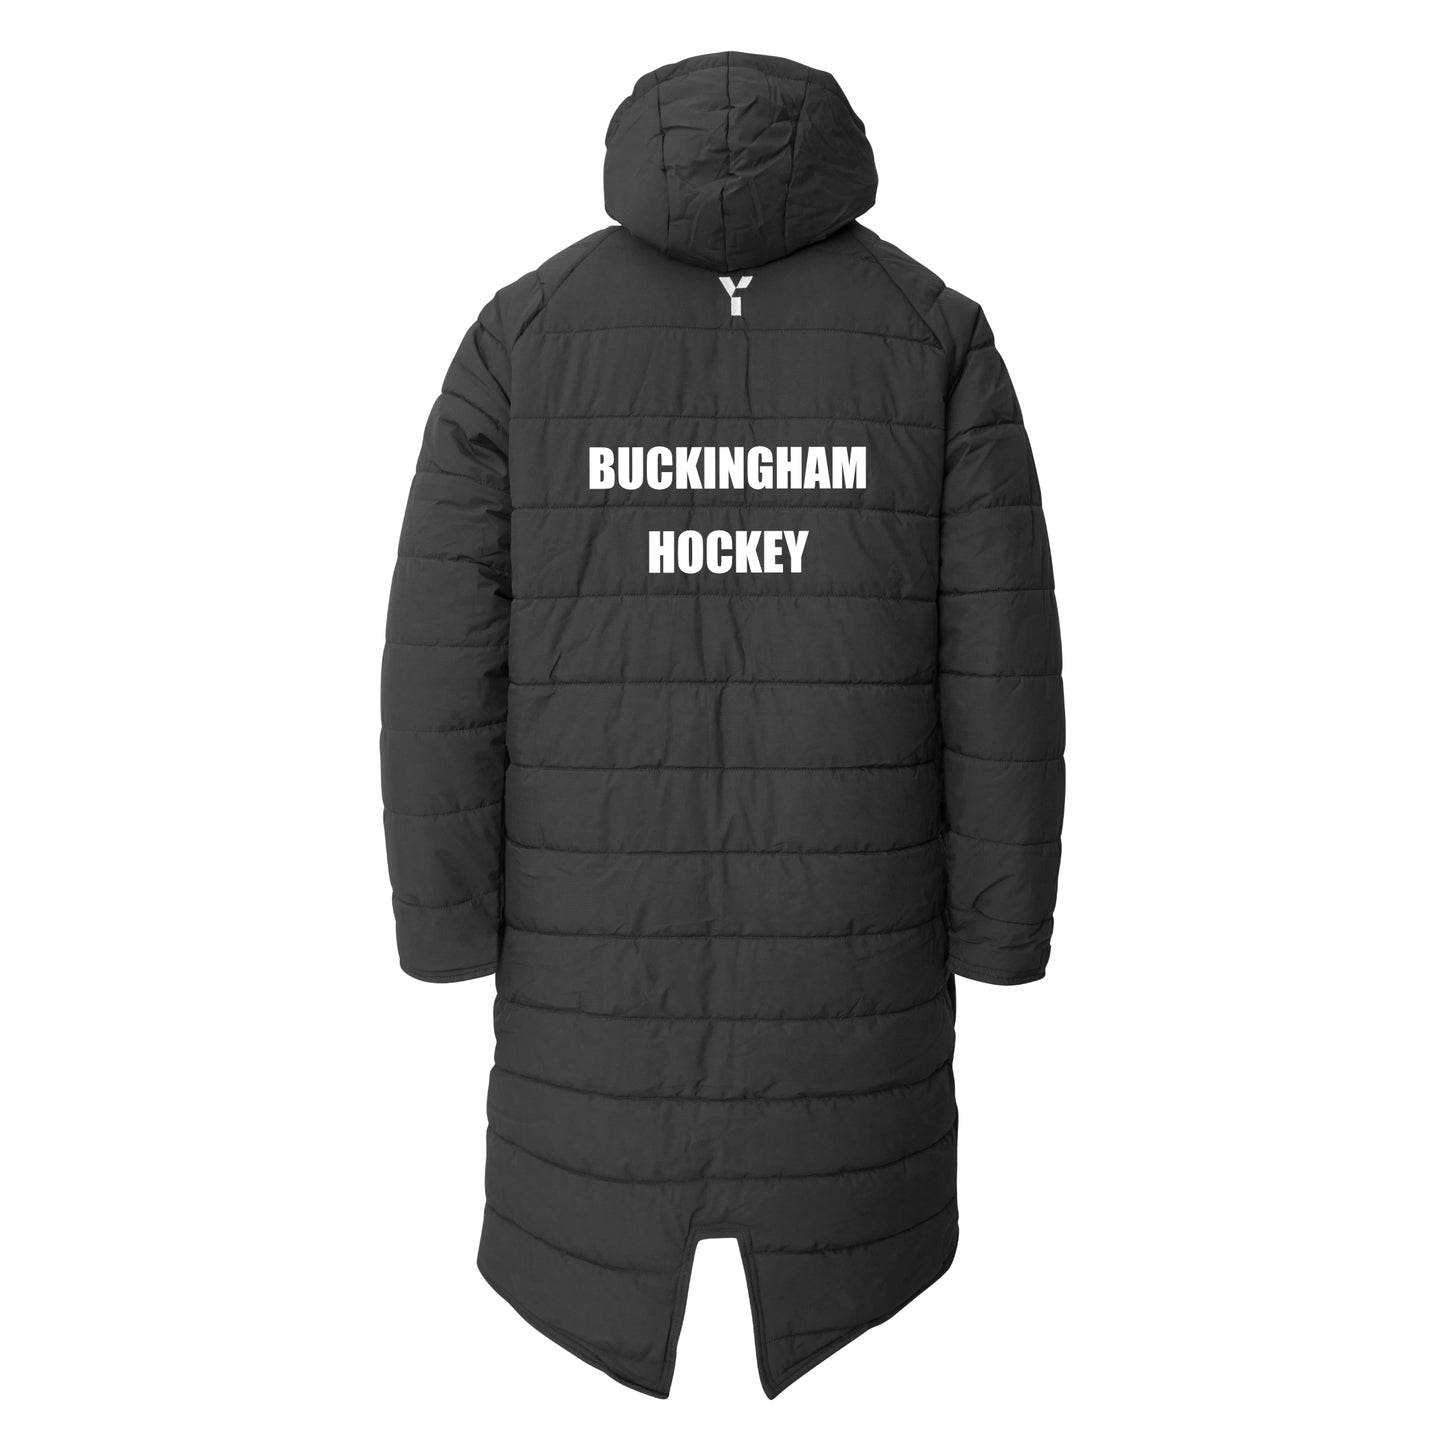 Buckingham HC - Bench Jacket Unisex Black